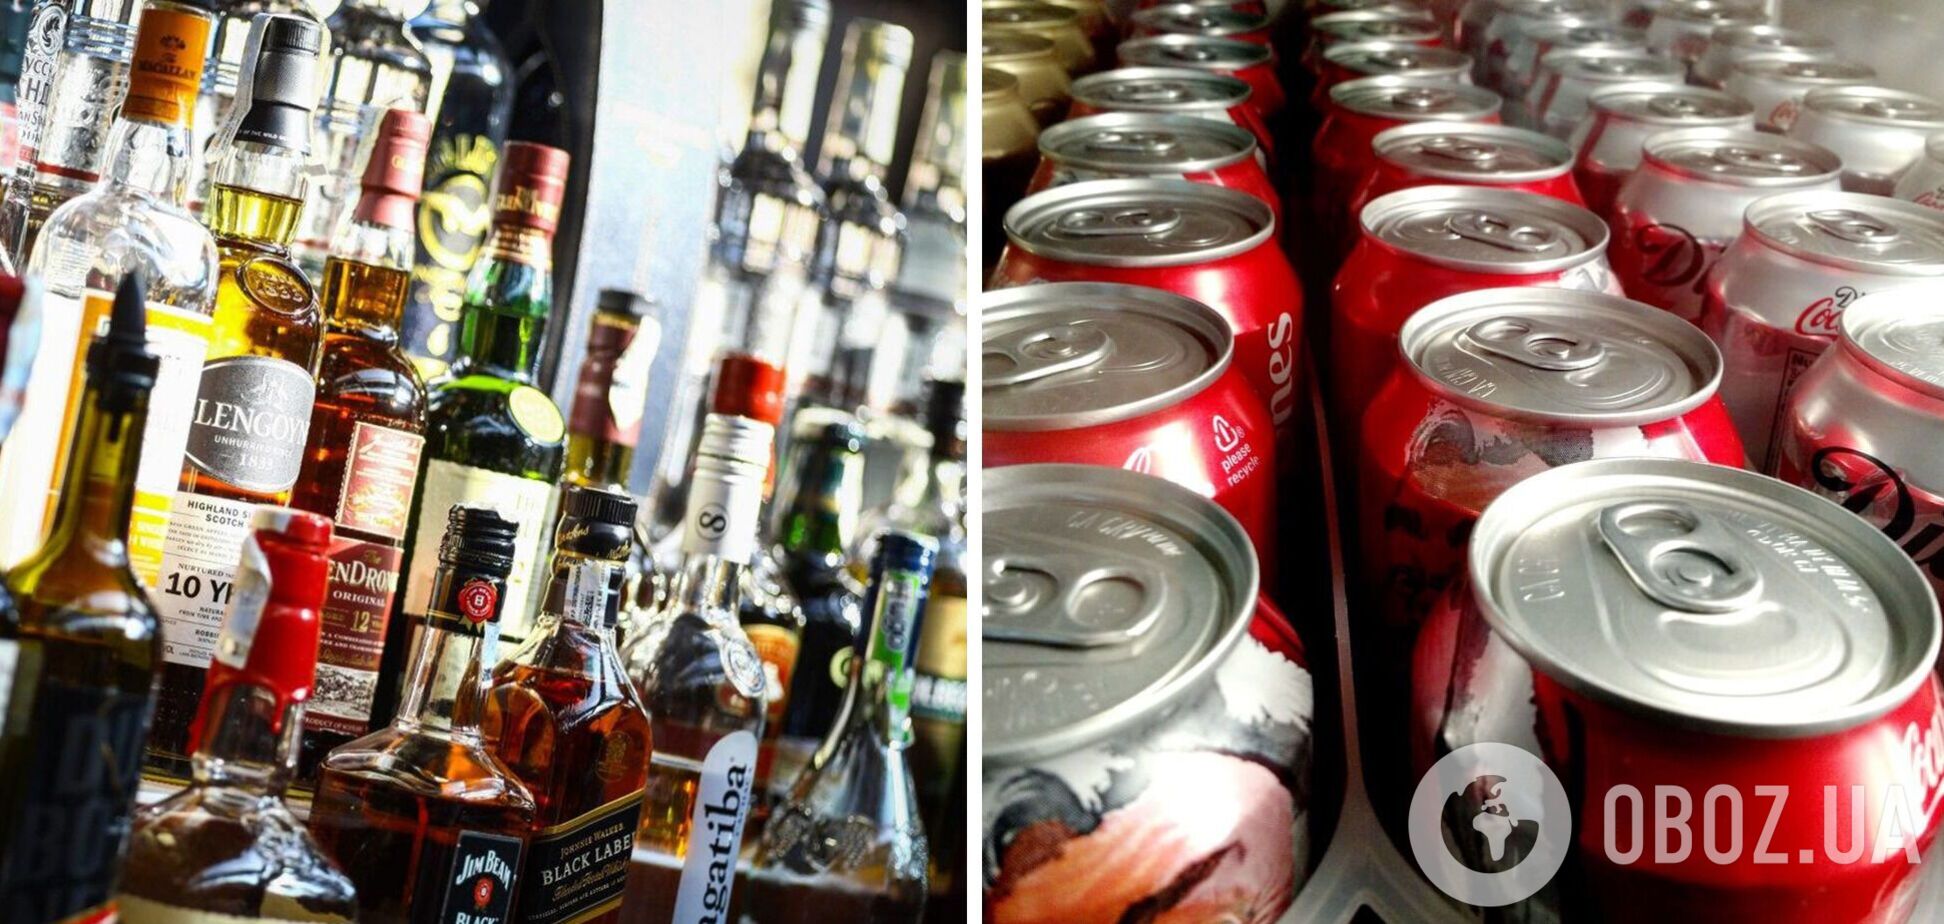 Сладкие напитки в Украине хотят обложить дополнительным налогом, а цены на алкоголь повысить